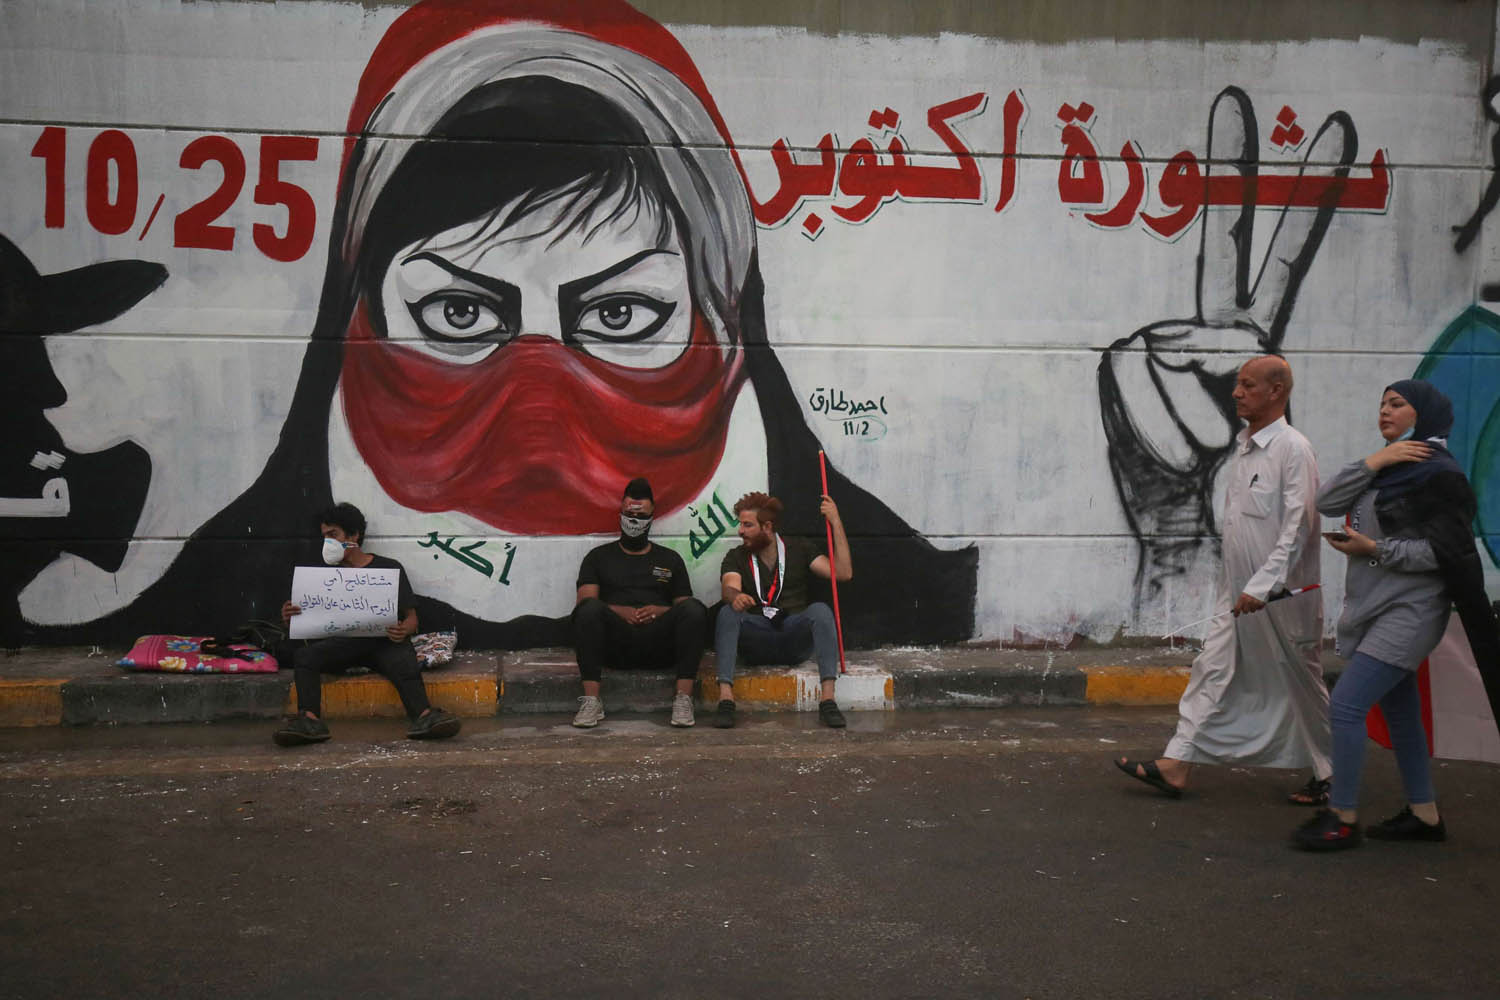 غرافيتي على أسوار بغداد